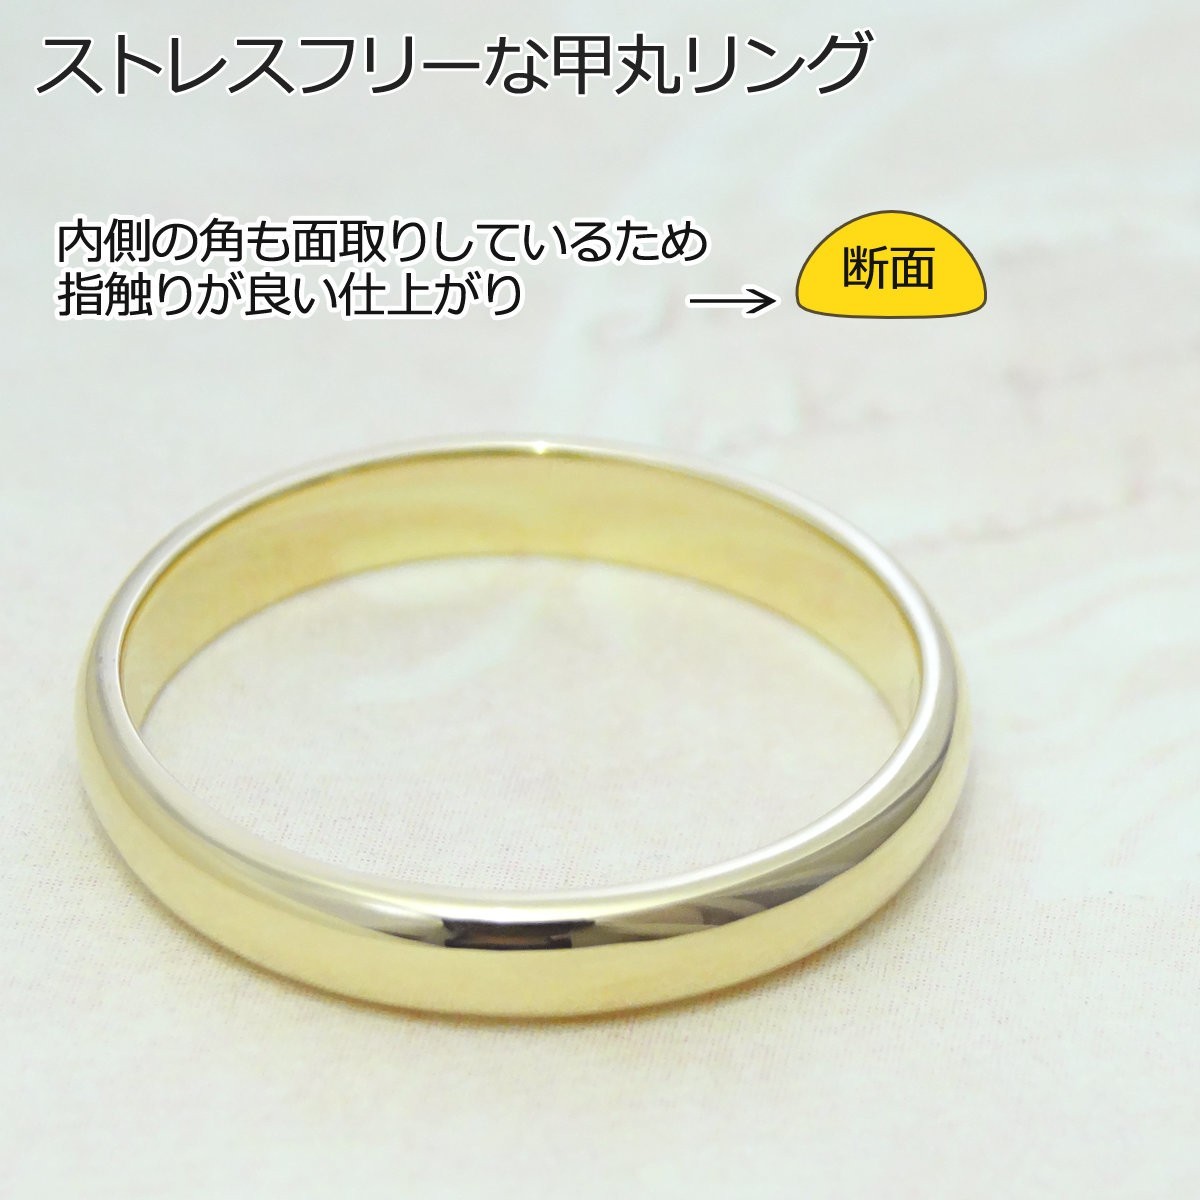 18金 K18 リング 3mm幅 レディース メンズ シンプル 甲丸 指輪 ゴールド 刻印無料_画像2